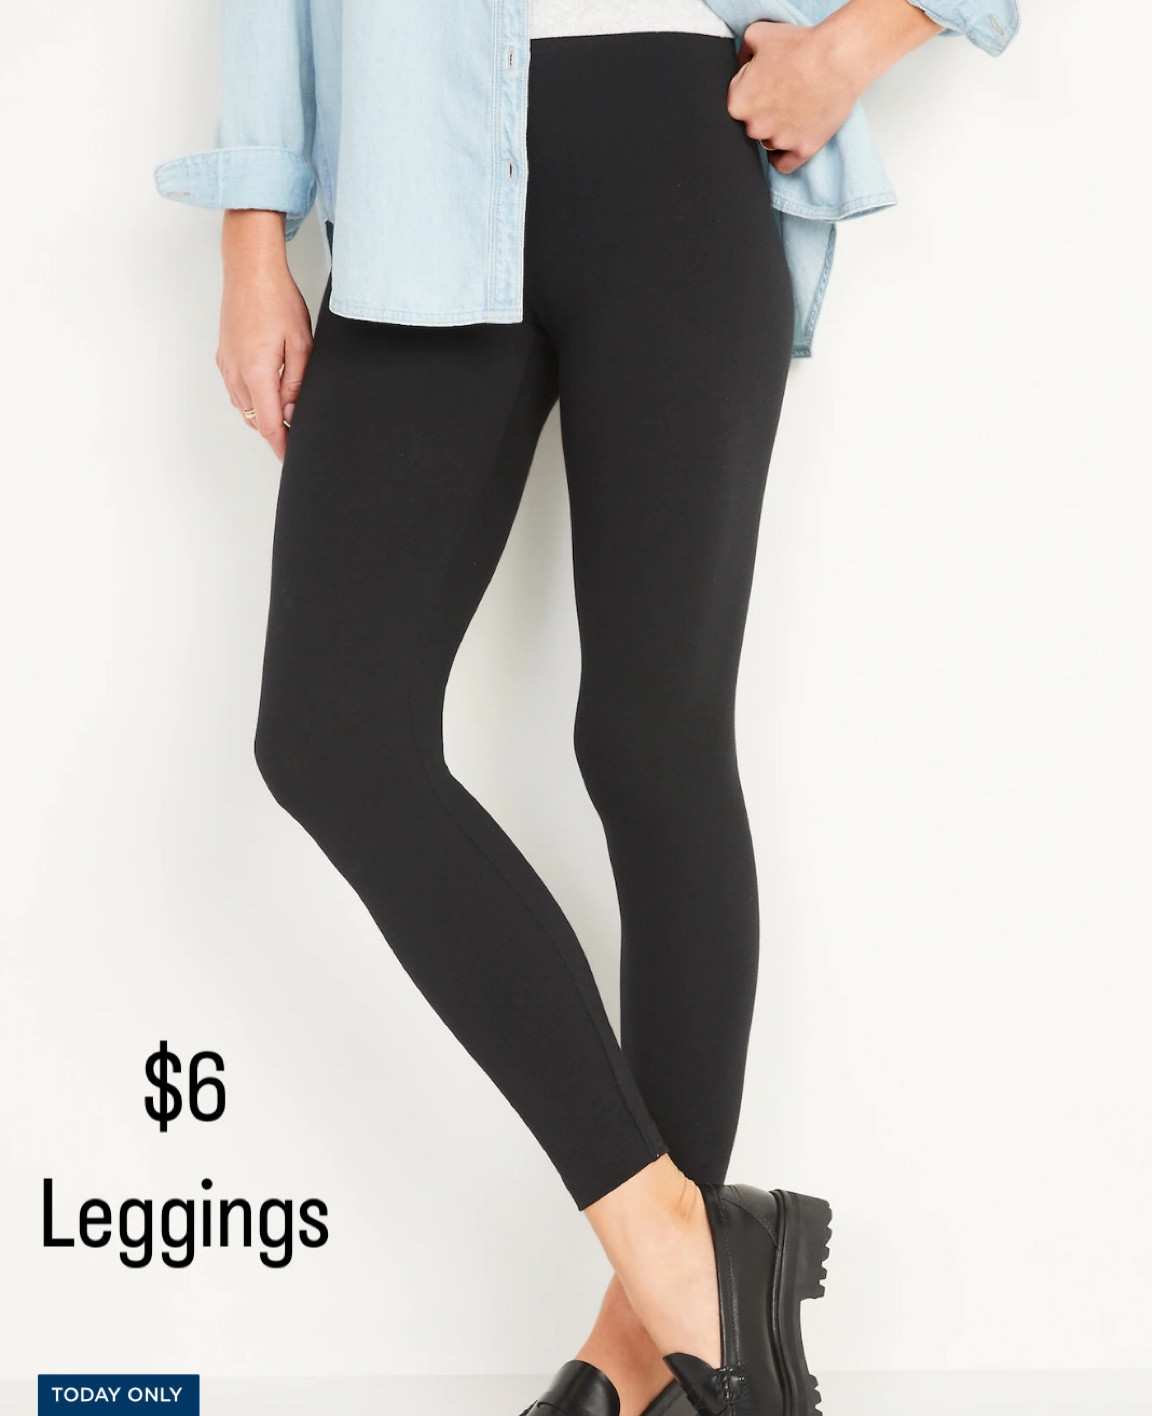 Extra High-Waisted 7/8-Length Leggings For Women